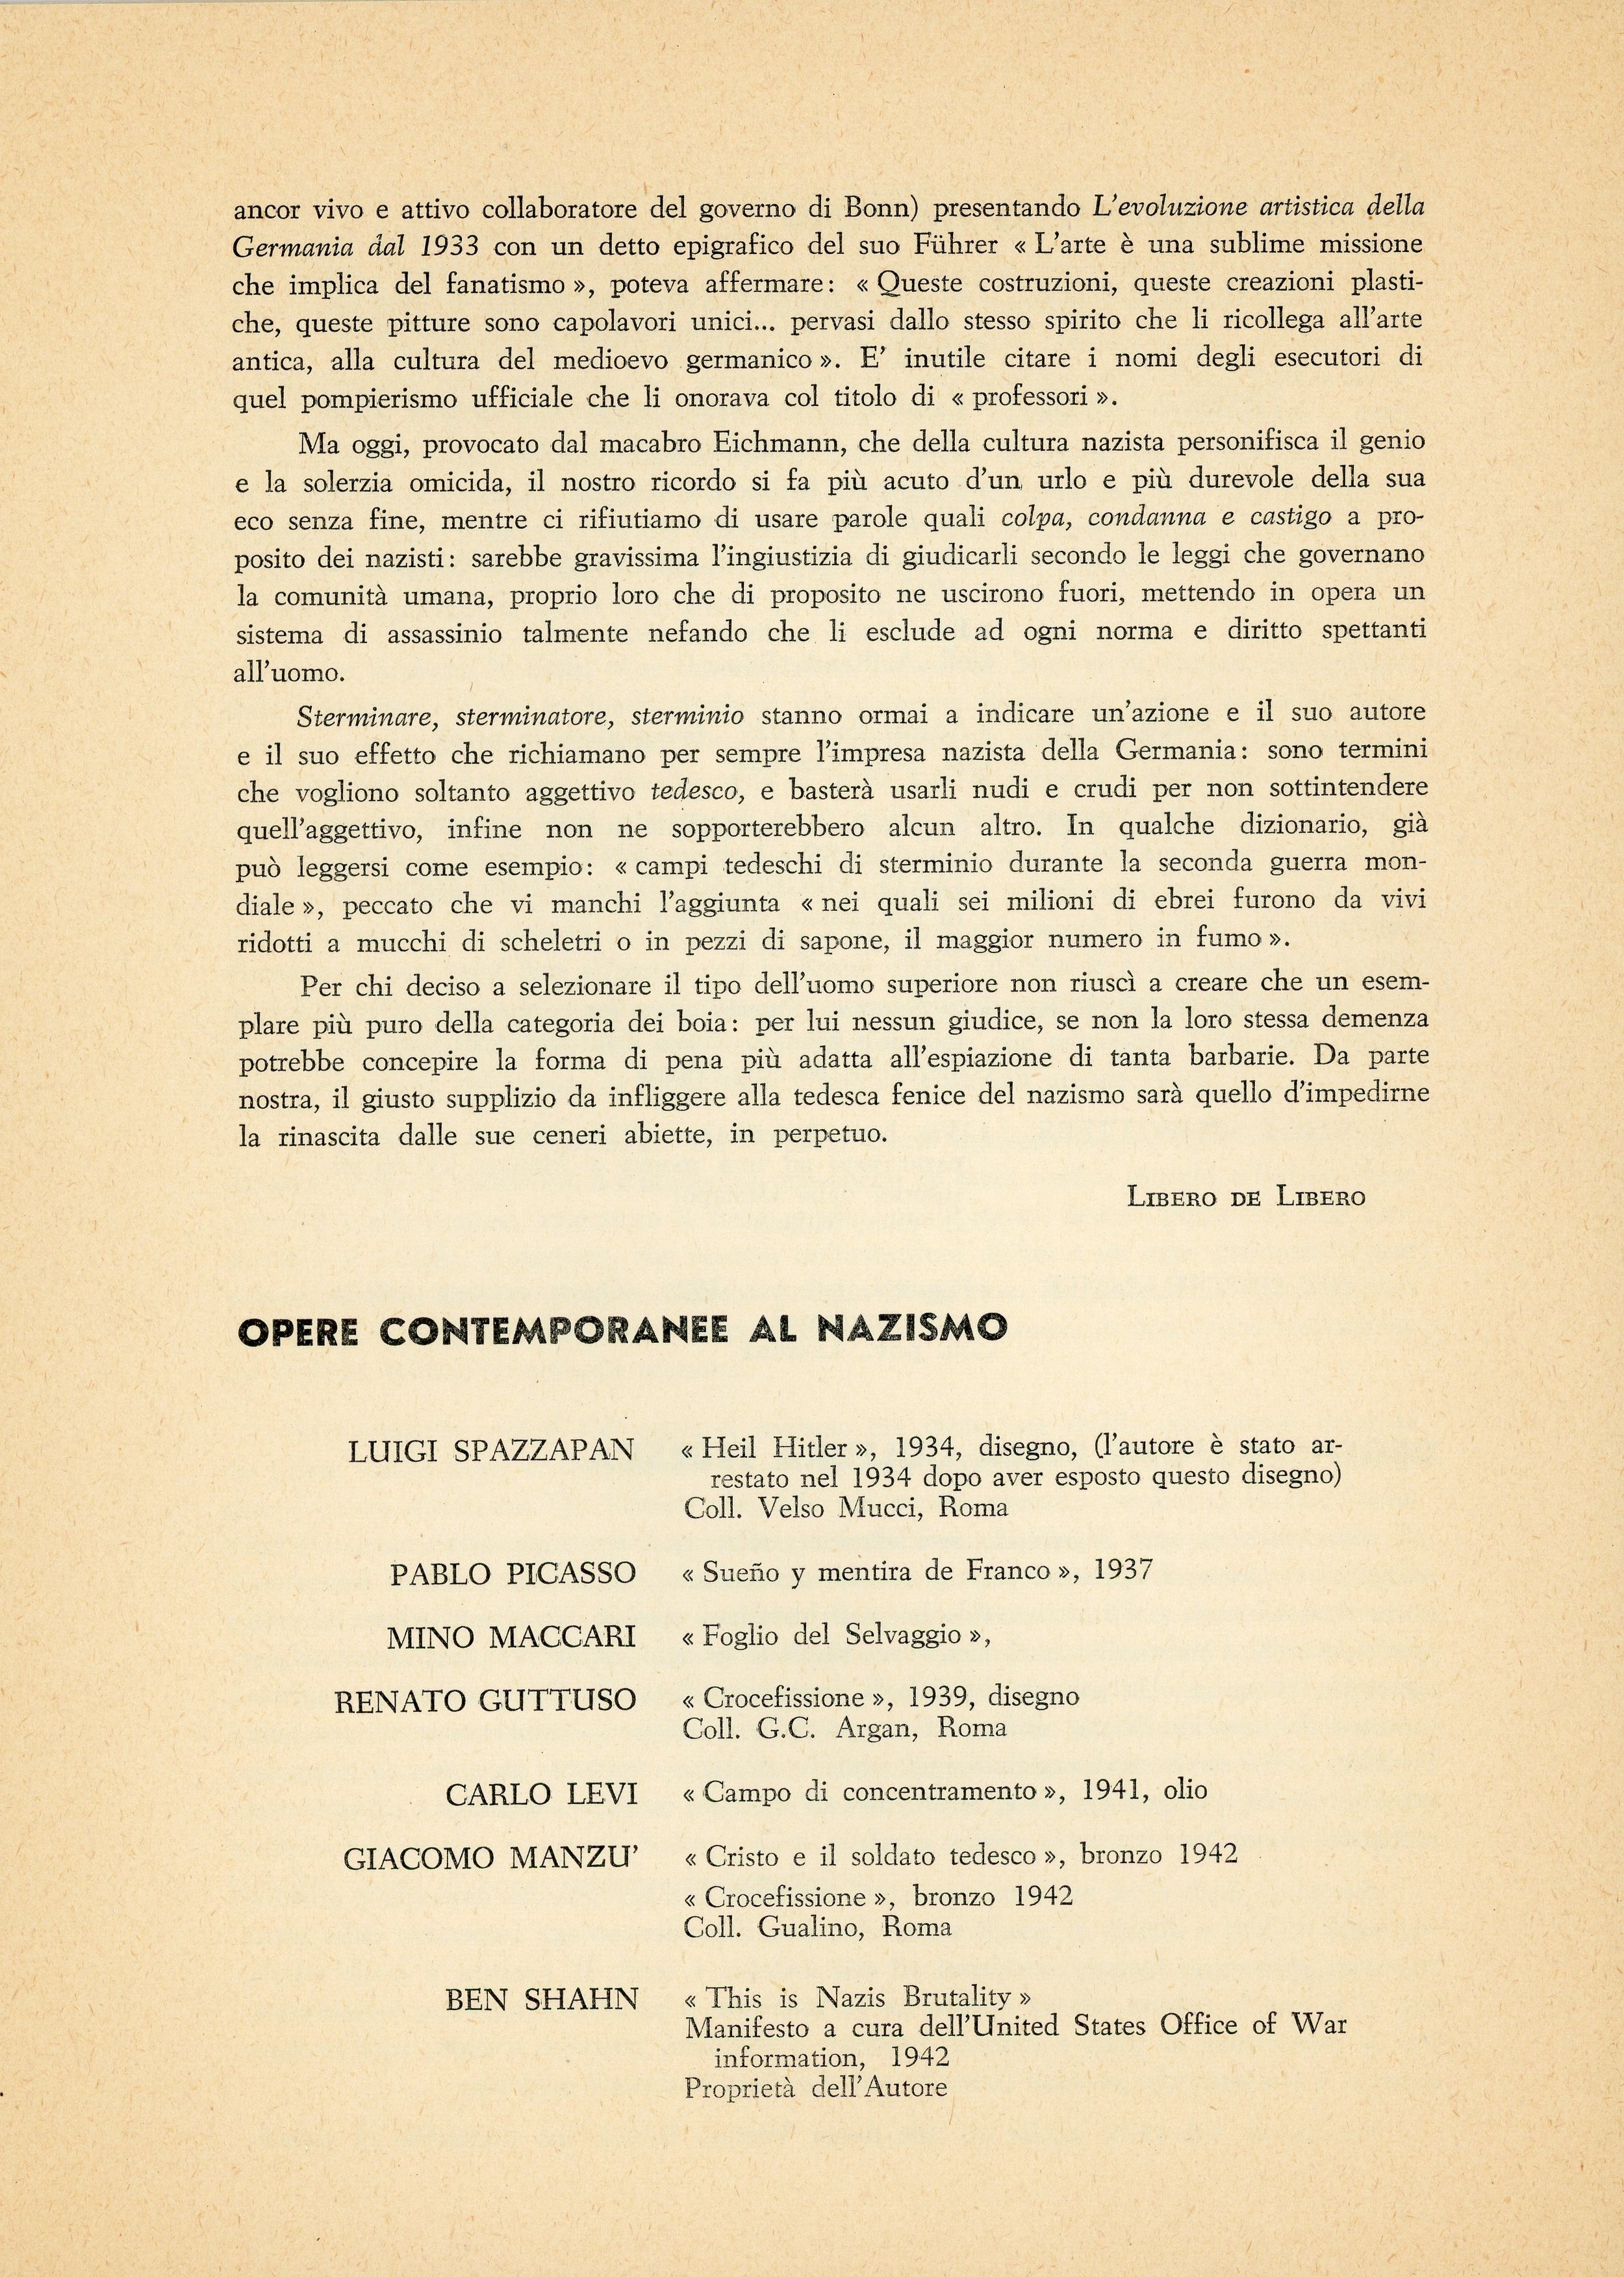 1961-05 Opposizione al Nazismo Obelisco - Bruno Caruso_05.jpg